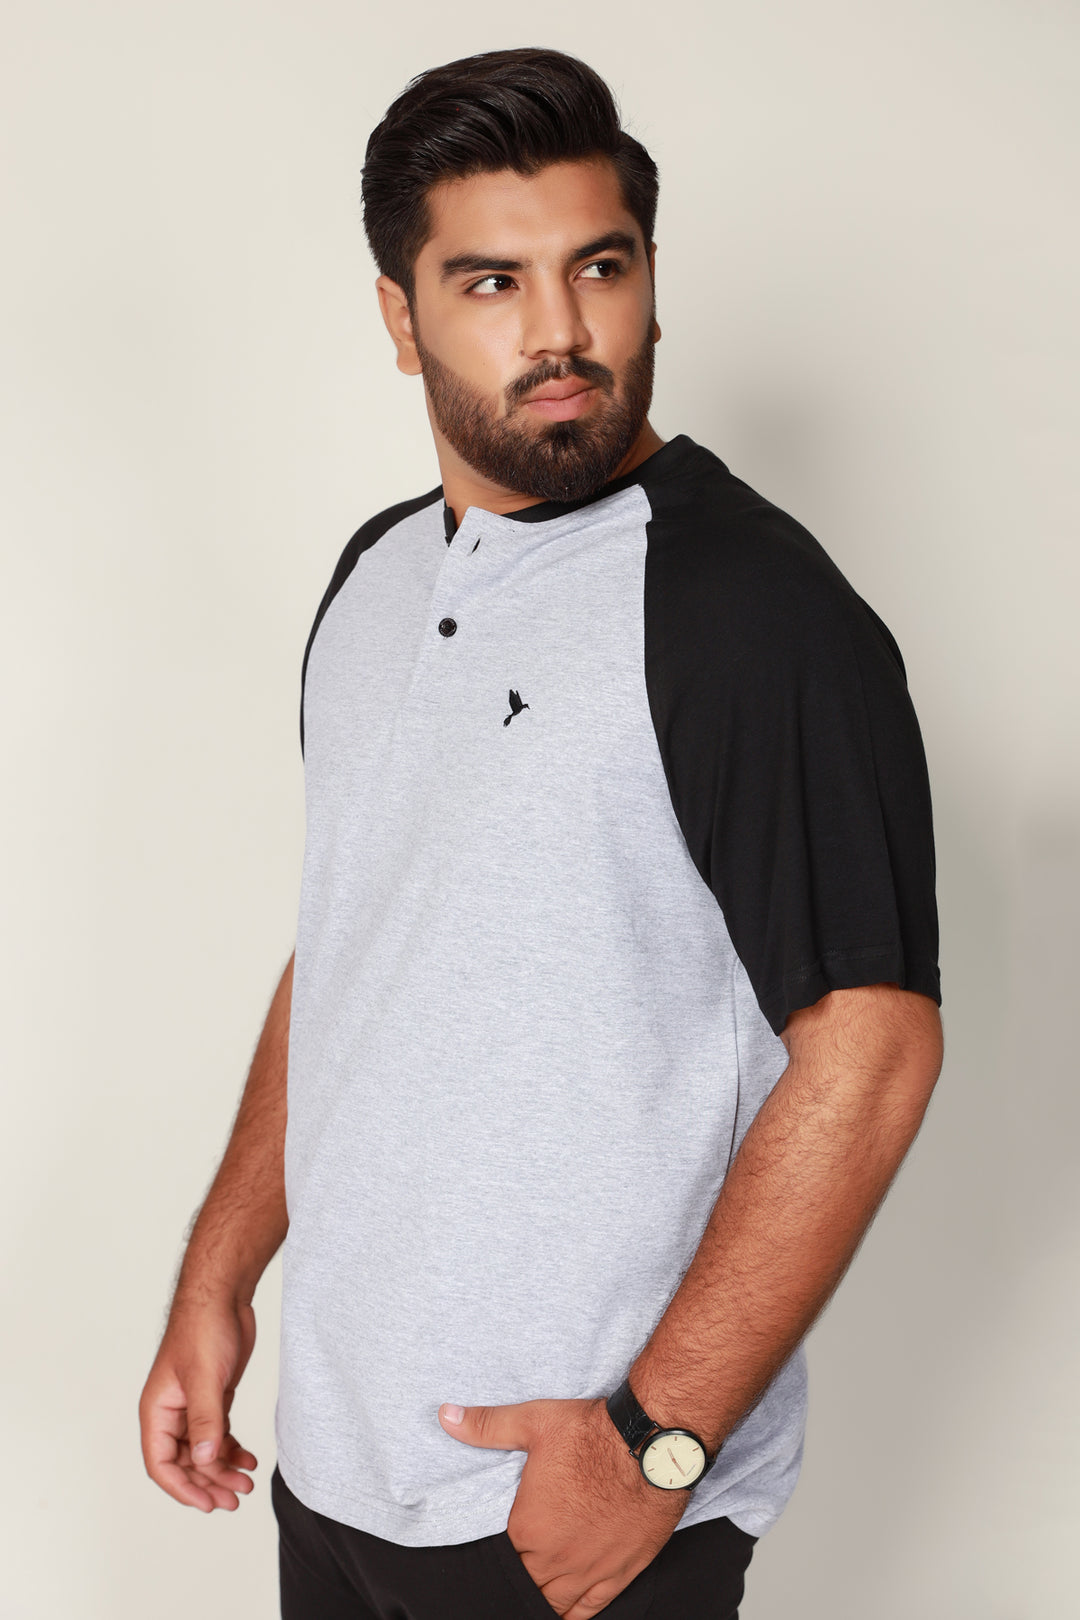 Gray & Black Raglan T-Shirt (Plus Size) - S22 - MT0176P